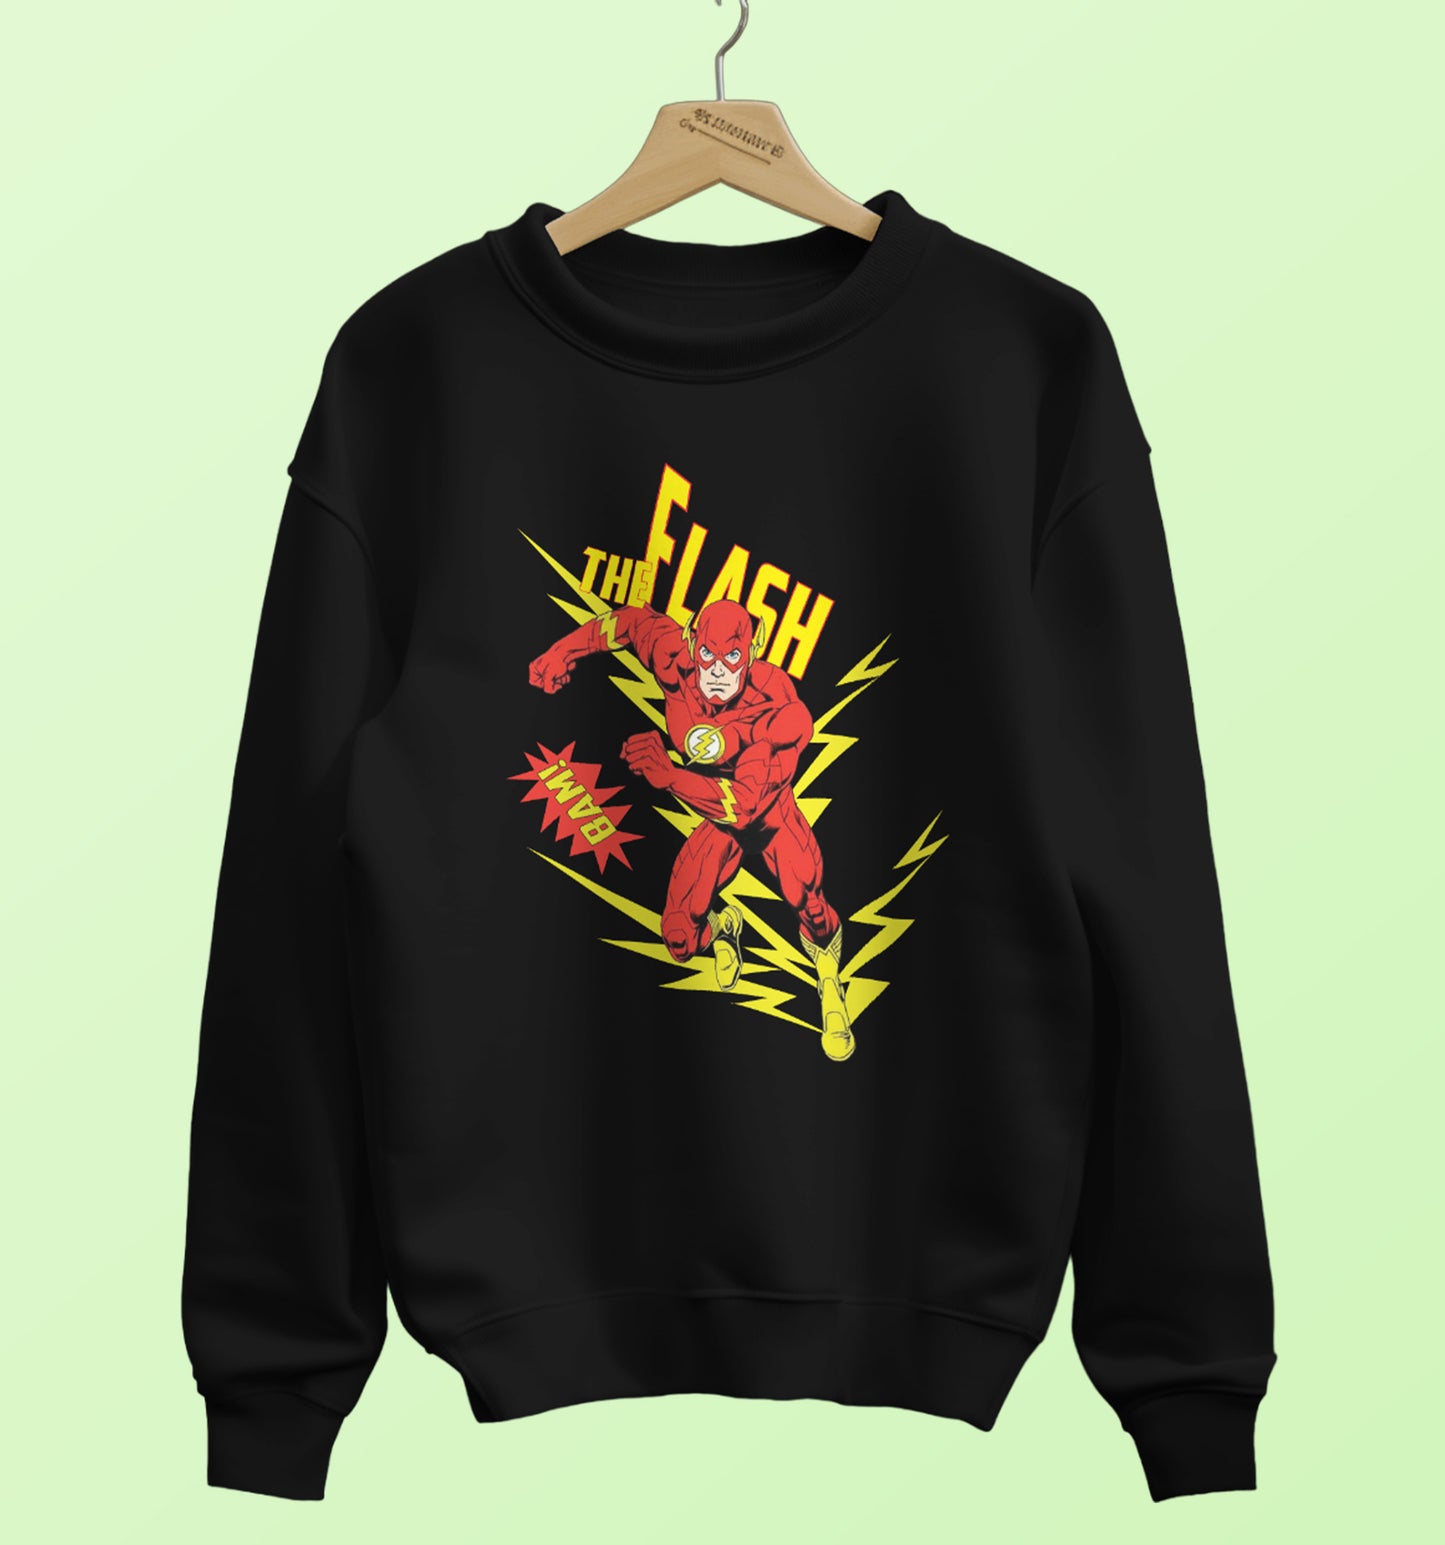 Dc - The Flash Dc Sweatshirt In Black - Mon Zurich Originals